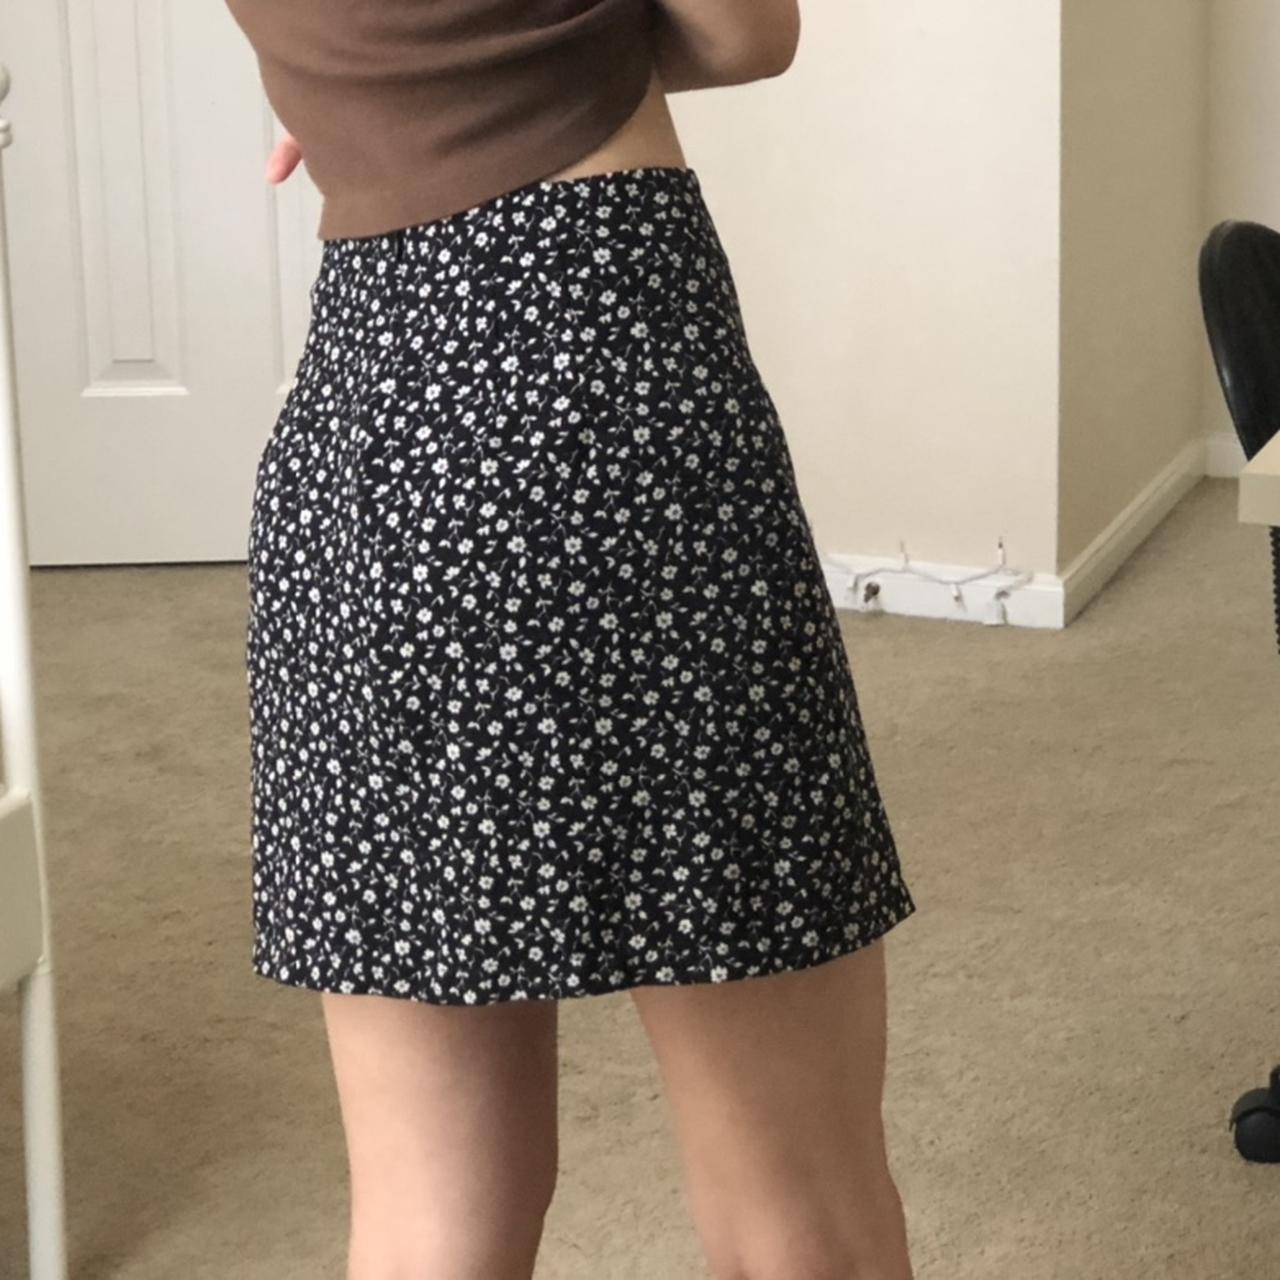 Brandy Melville floral skirt ! fits 23-24 waist :) - Depop